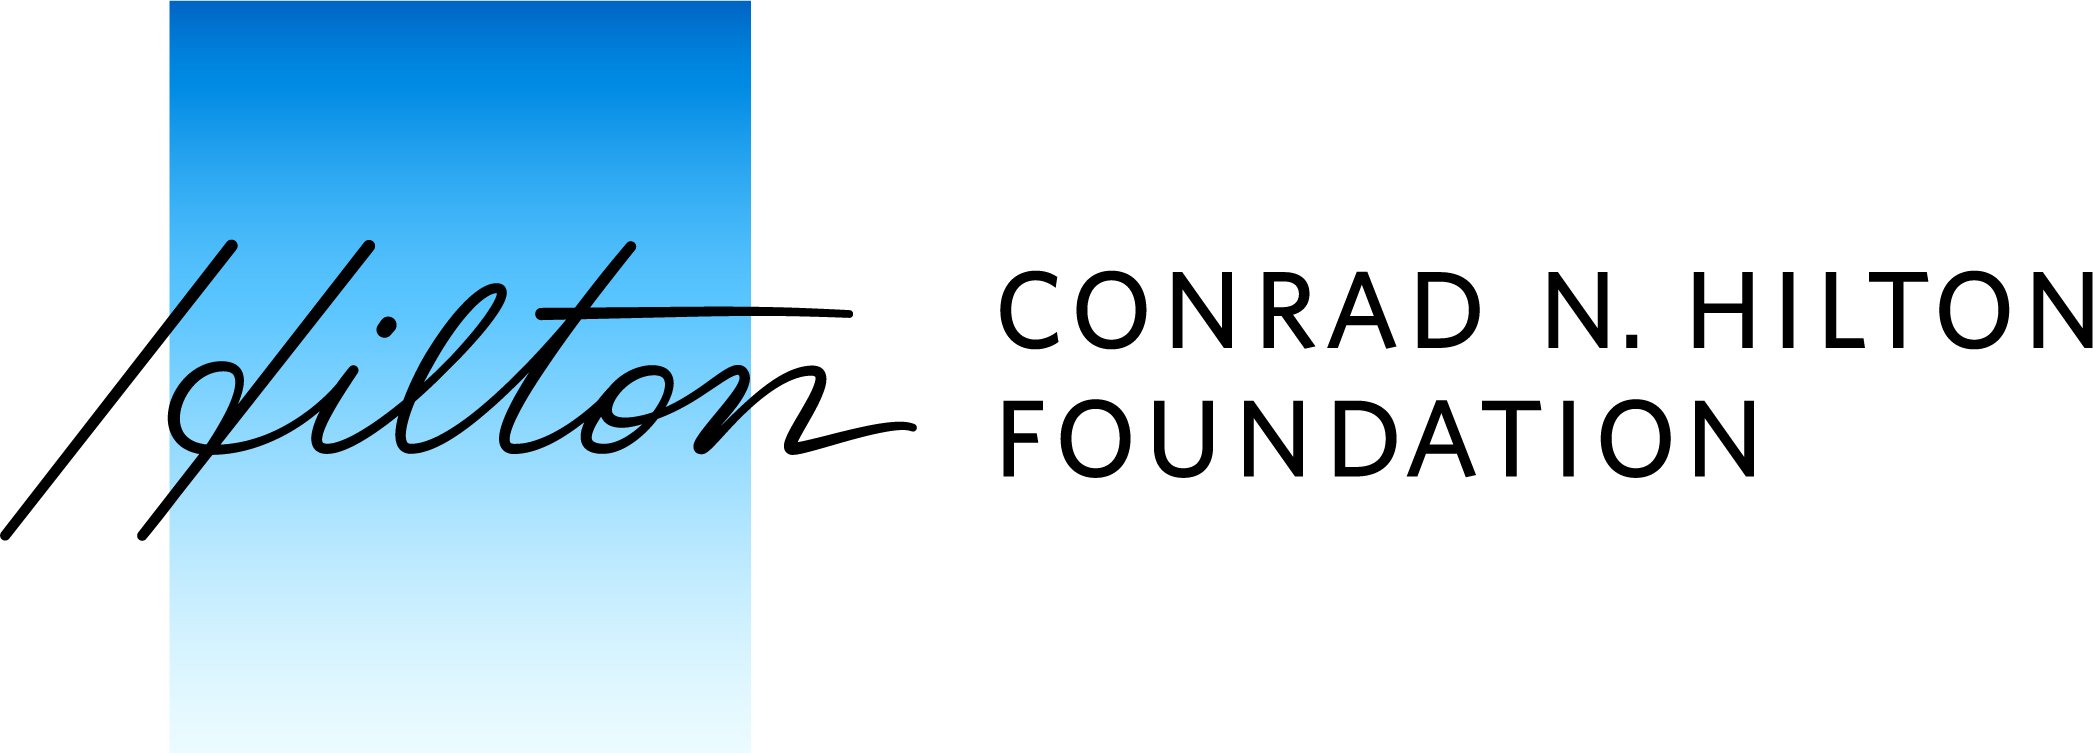 Conrad_N._Hilton_Foundation_logo.jpg